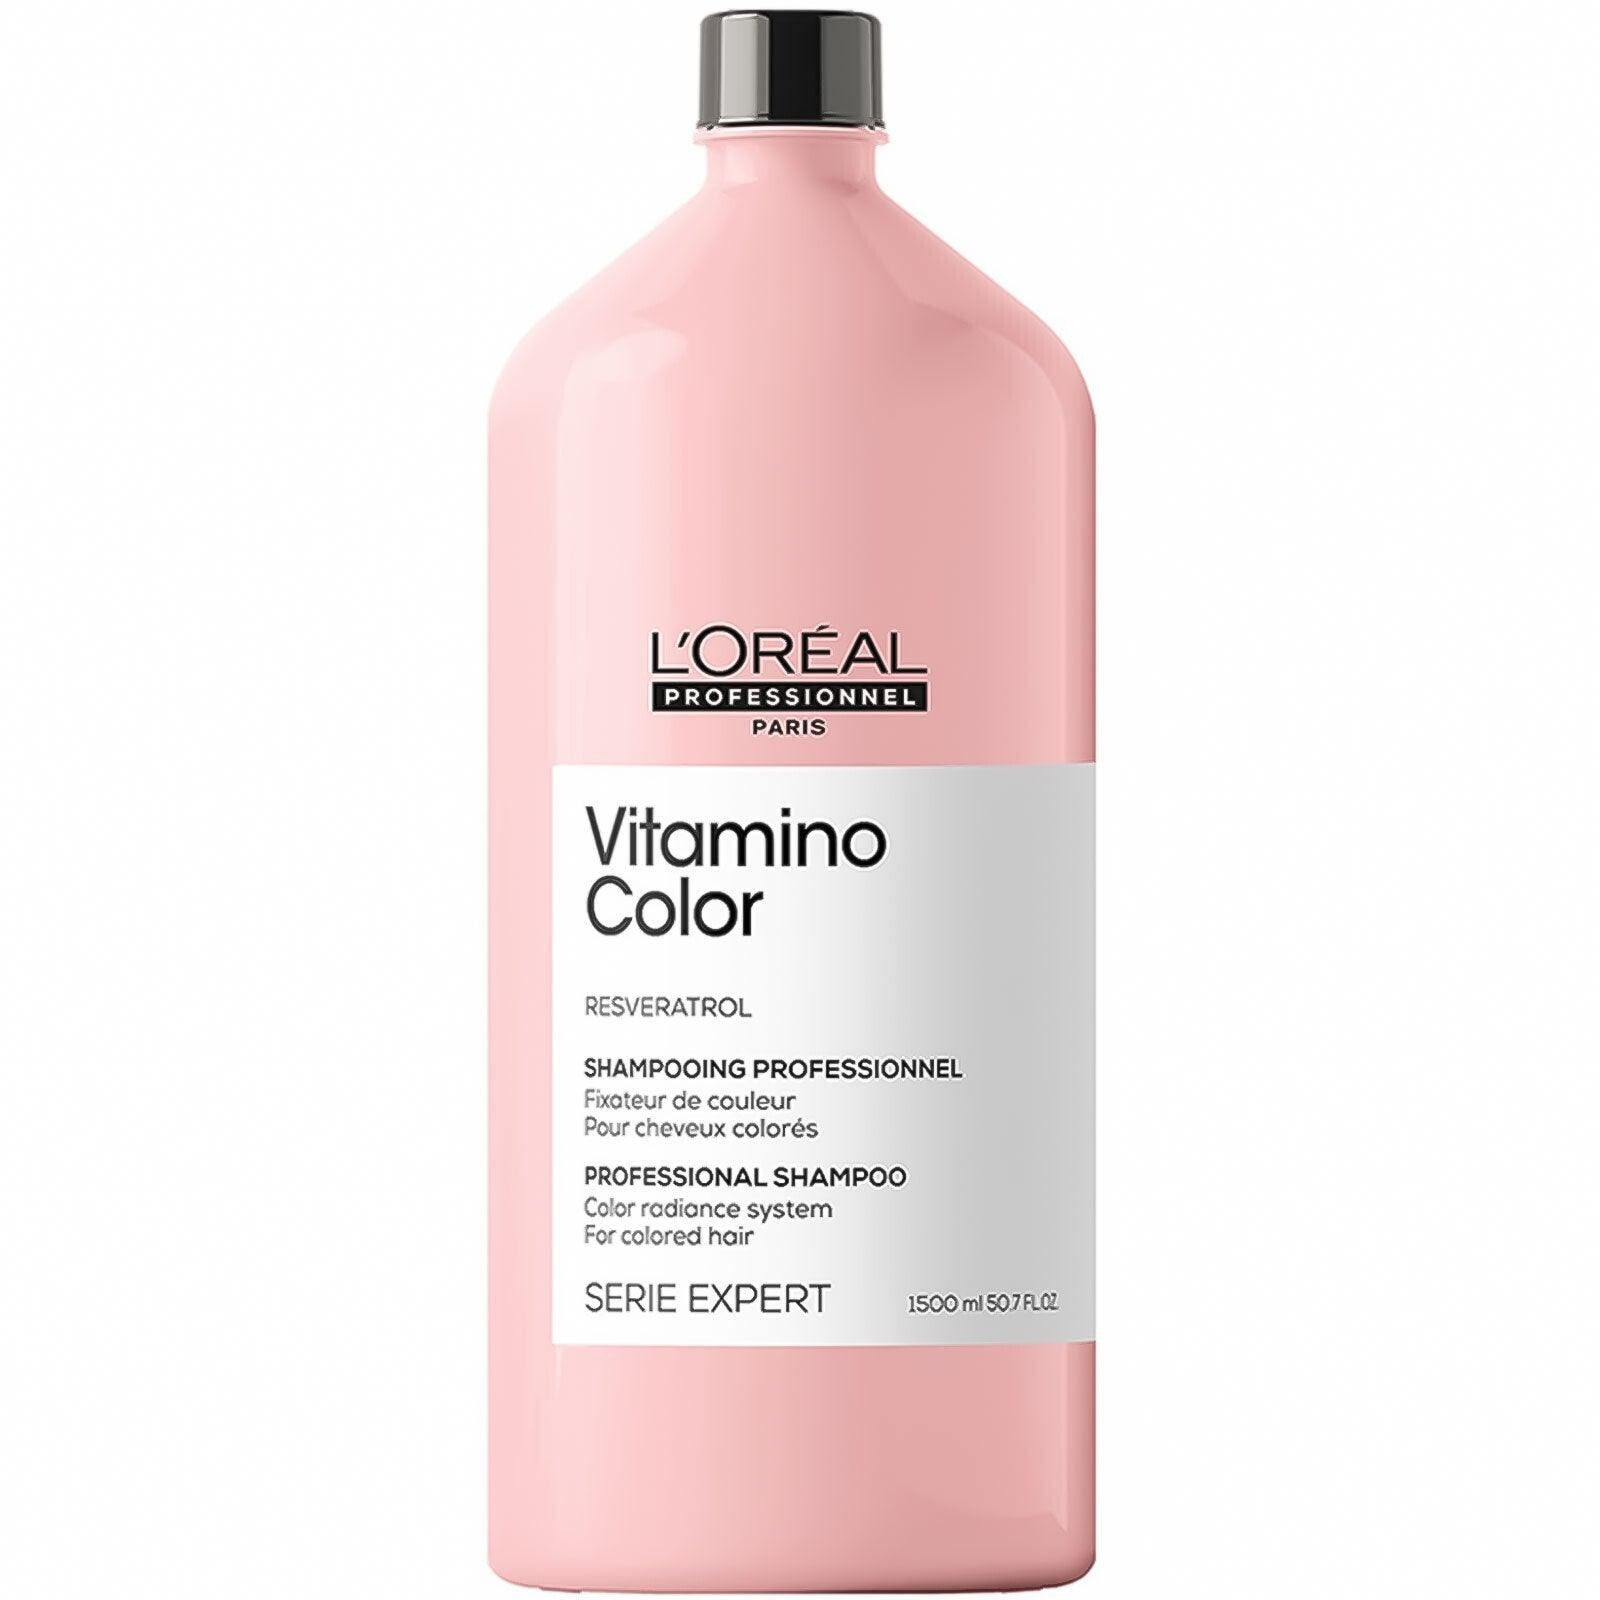 L'Oreal Paris Vitamino Color Shampoo Витаминный шампунь для окрашенных волос 1500 мл